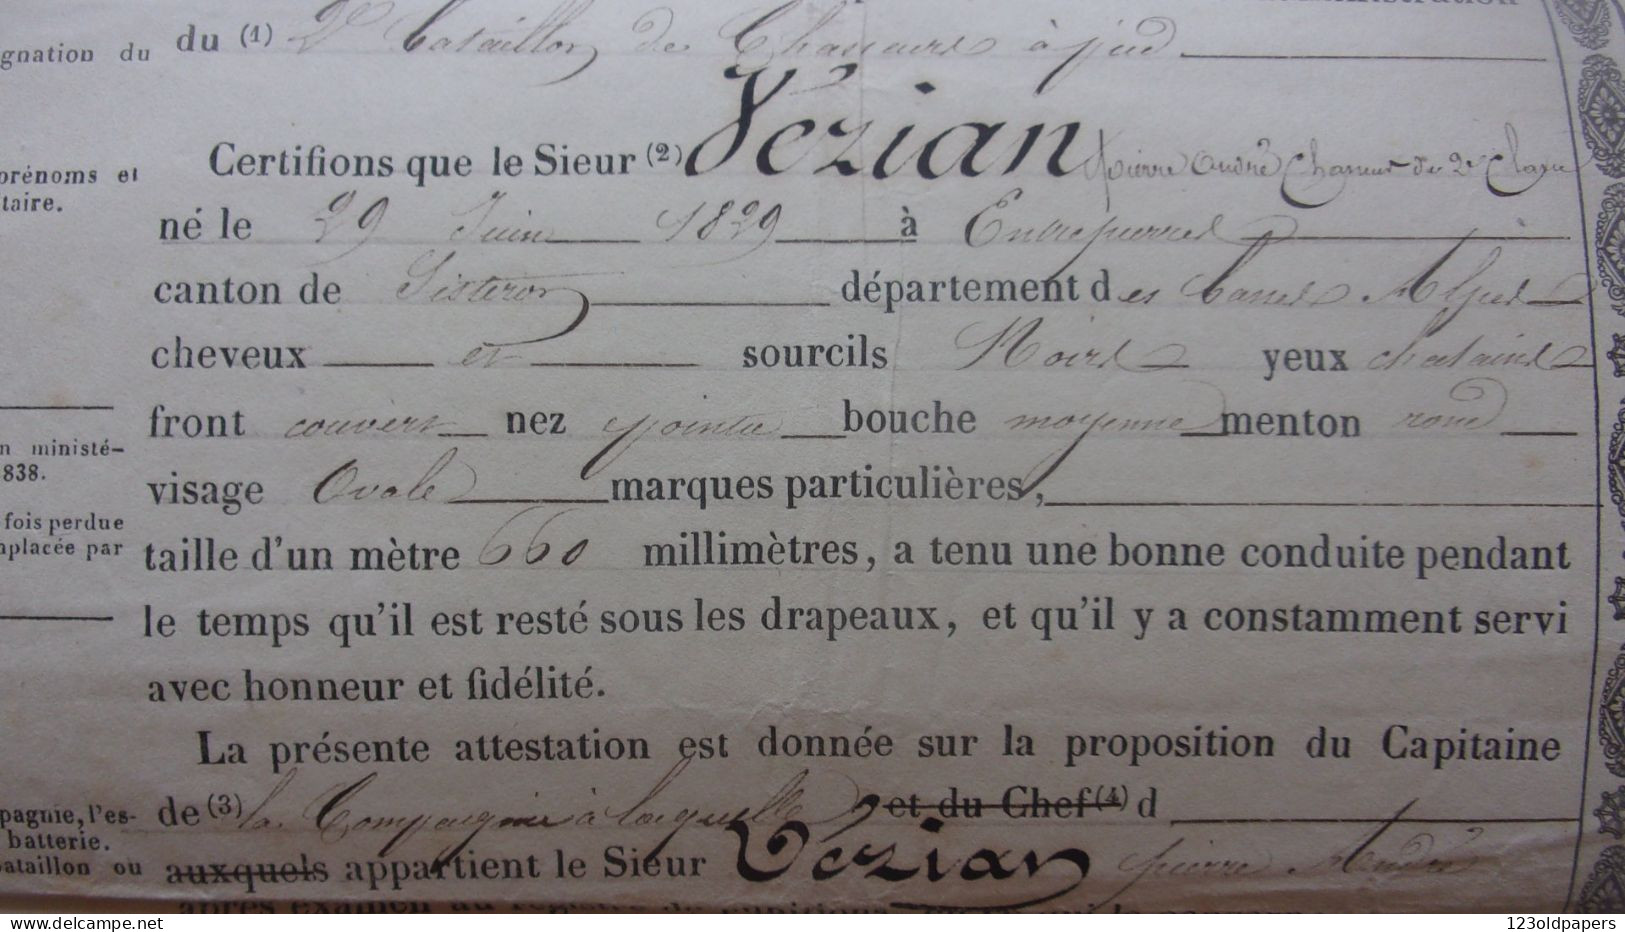 1855 Certificat De Bonne Conduite  2 EME BATAILLON DE CHASSEURS A PIEDS VEZIAN ENTREPIERRES SISTERON BASSES ALPES - Documentos